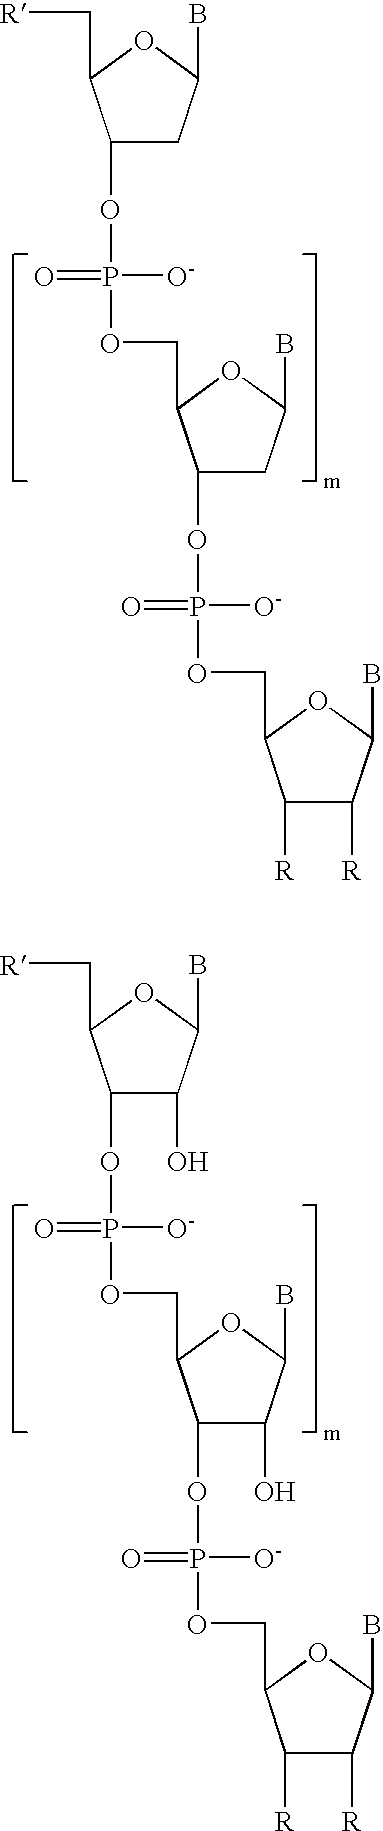 Water-soluble rhodamine dye conjugates